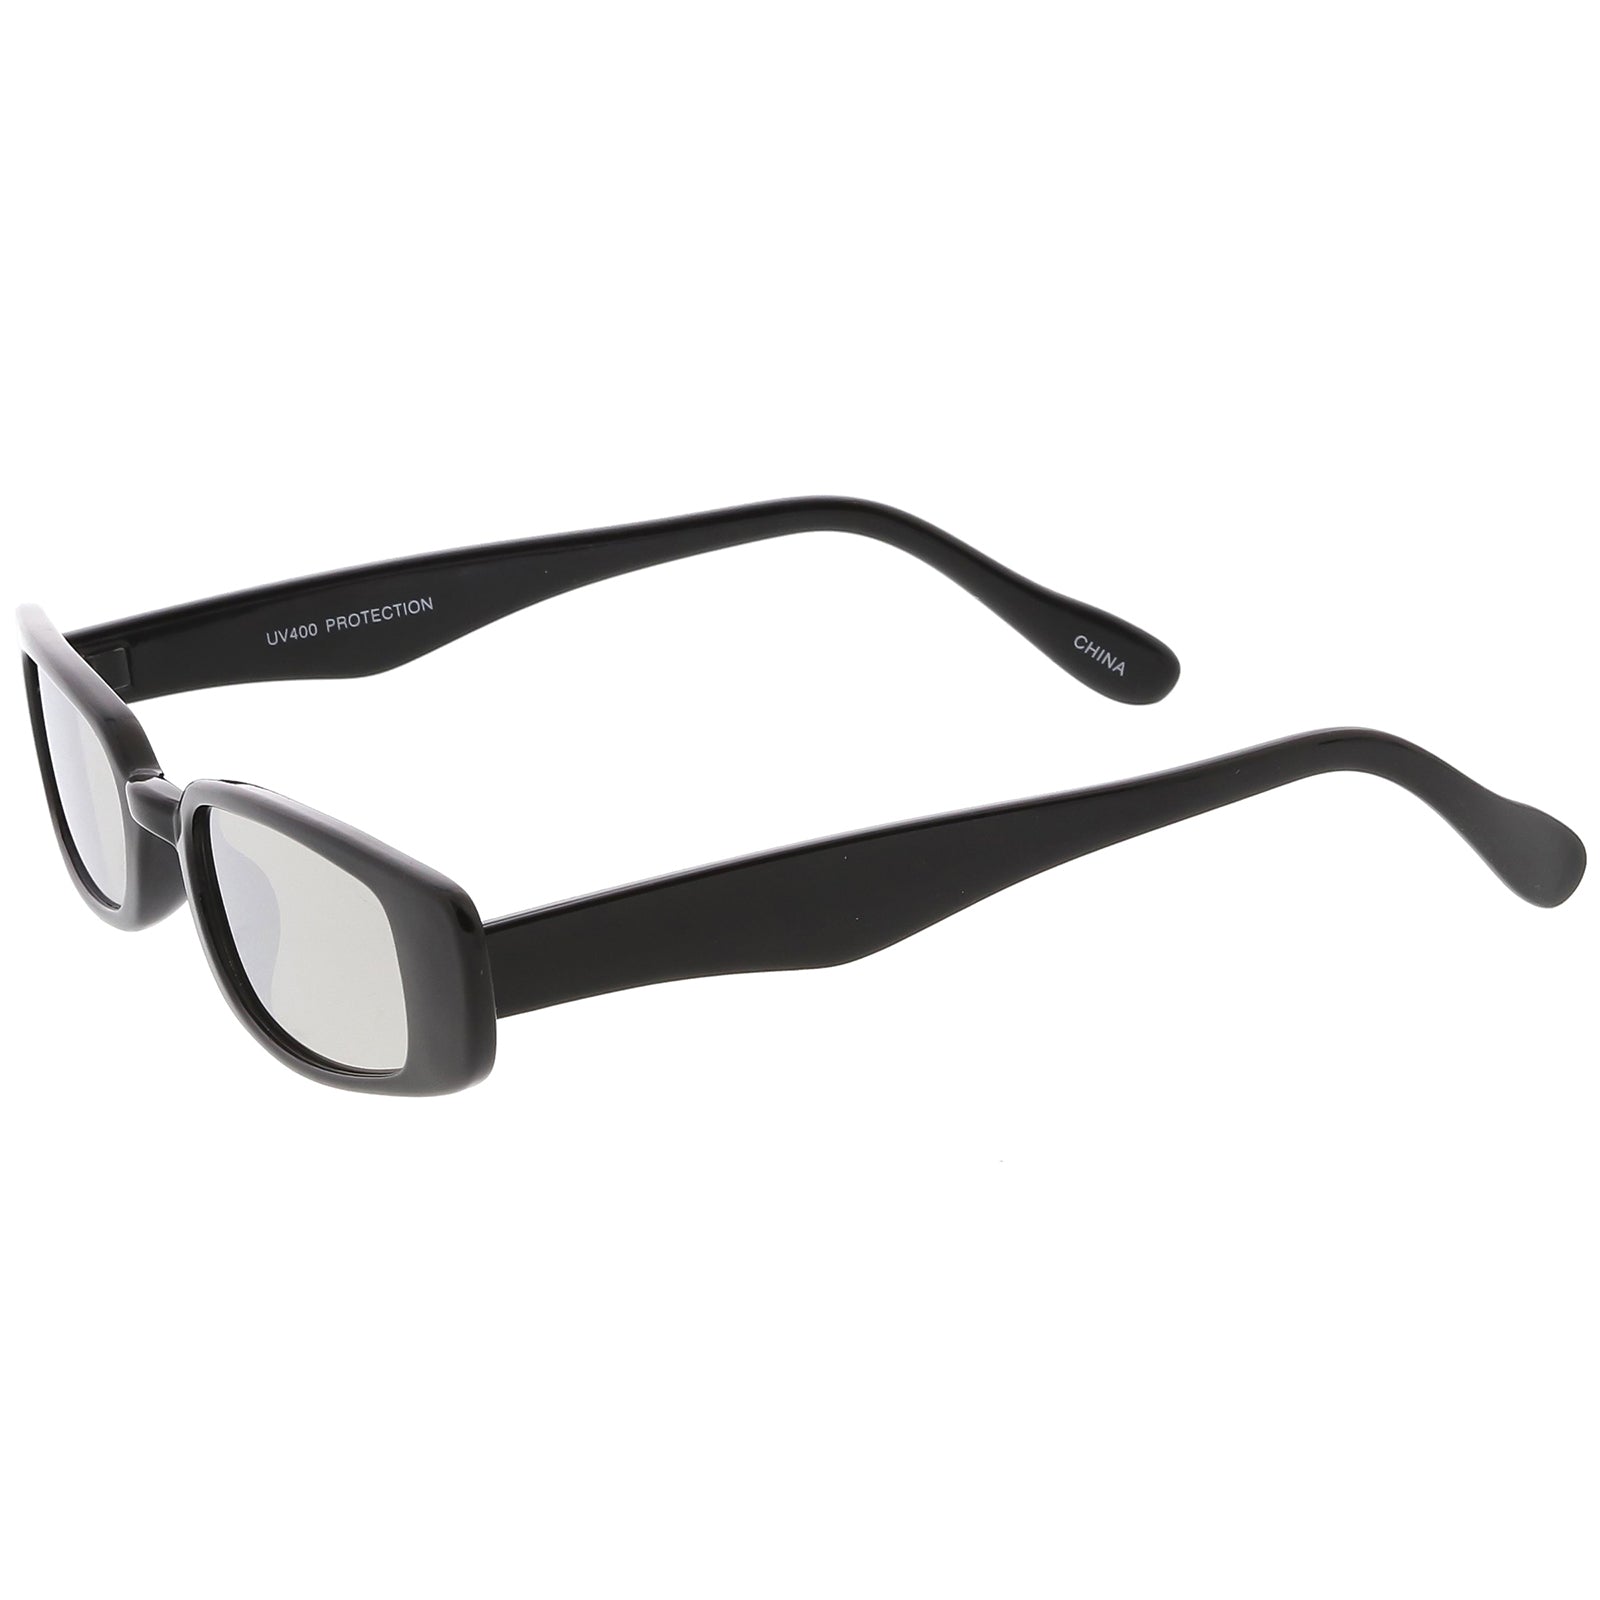 Retro 1990's Thin Rectangular Mirrored Lens Sunglasses White Magenta Mirror | zeroUV